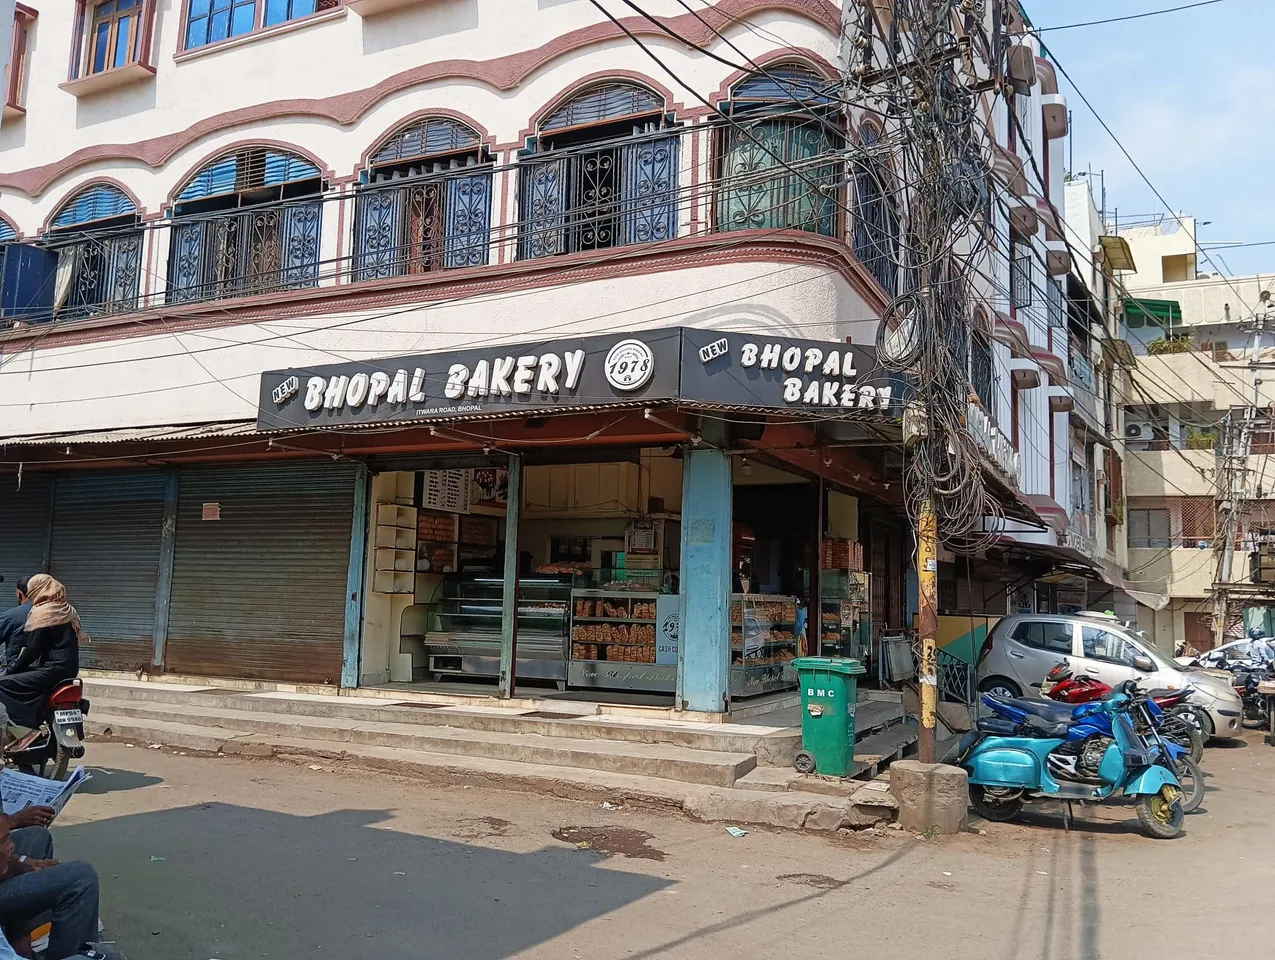 “यहाँ 40 परसेंट बेकरी बंद हो चुकी हैं”, क्या हैं भोपाल के बेकरीवालों के चुनावी मुद्दे?